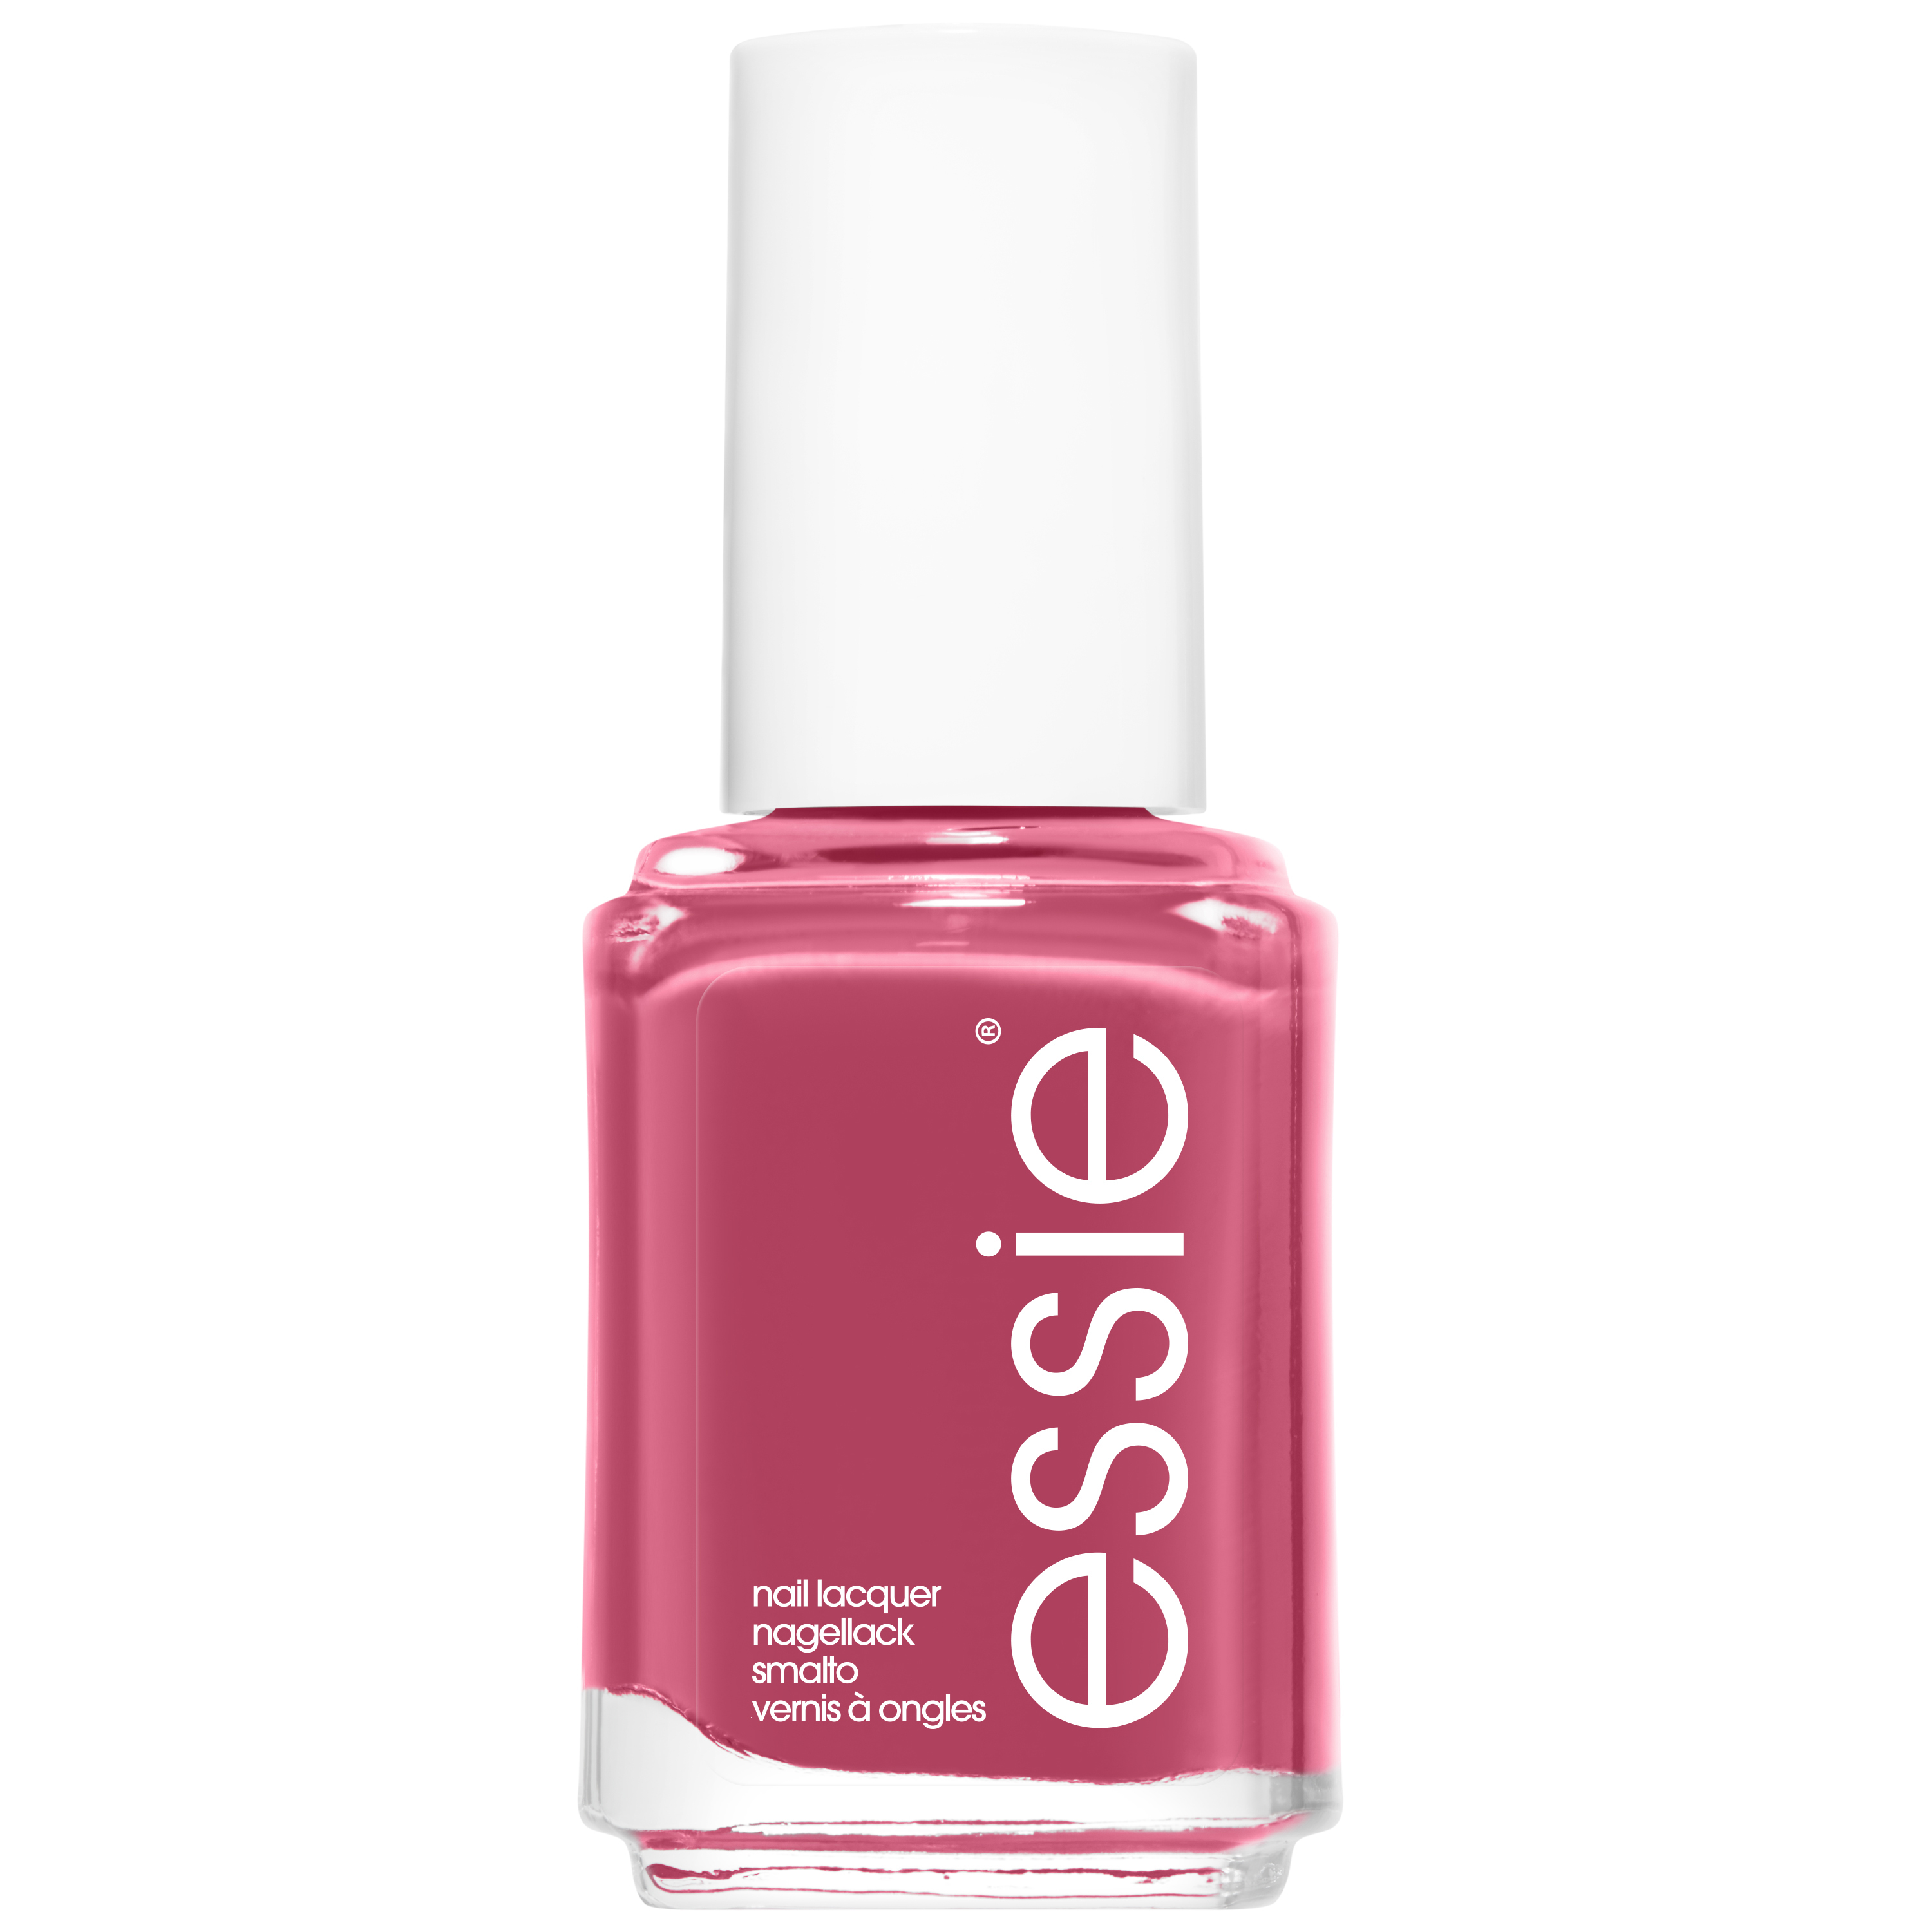 Essie original - 24 in stitches - roze - glanzende nagellak - 13,5 ml